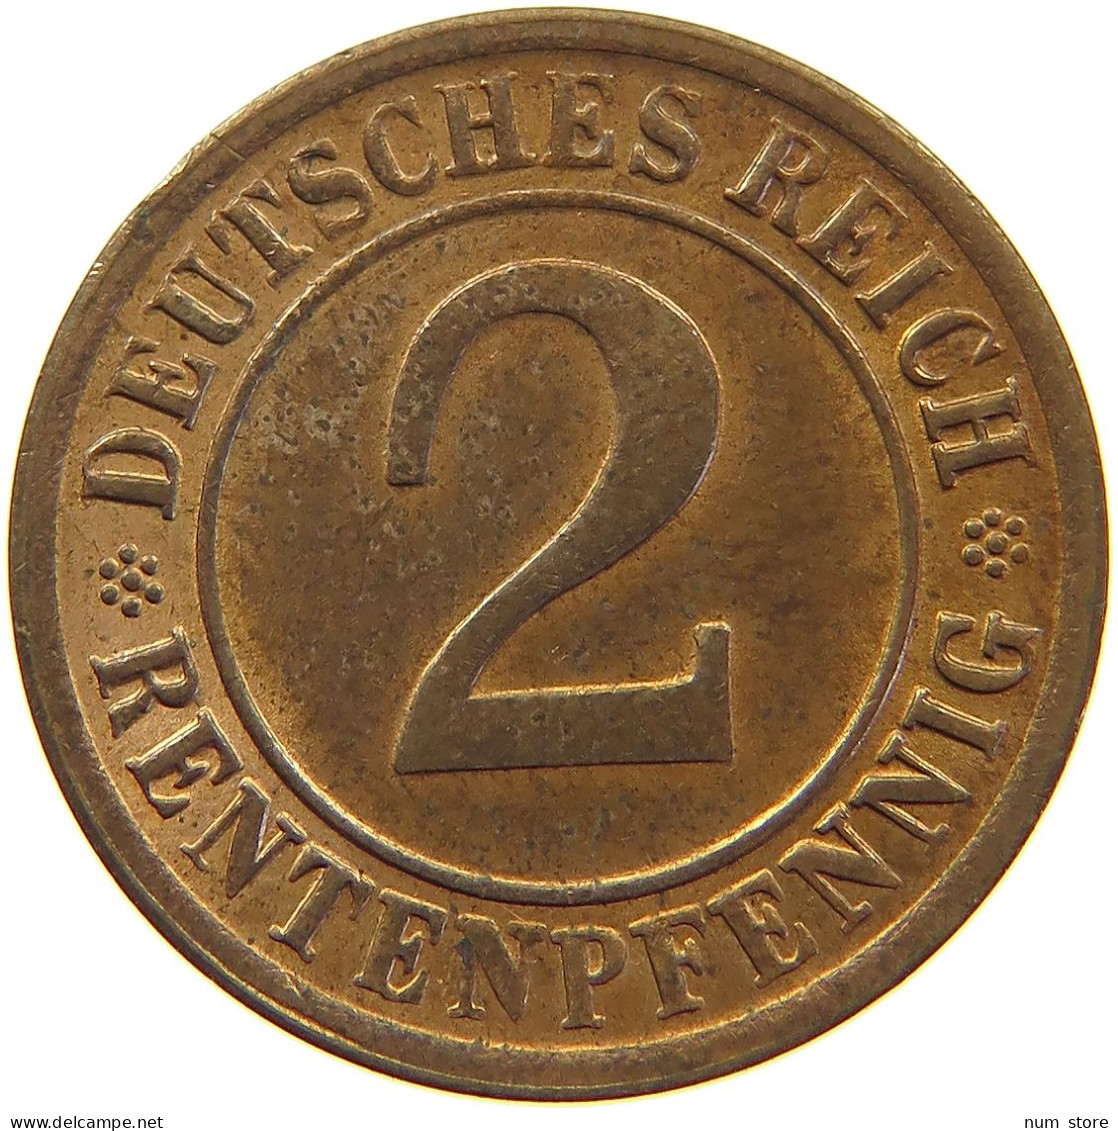 WEIMARER REPUBLIK 2 PFENNIG 1924 NO LETTER MINTING ERROR #c062 0221 - 2 Renten- & 2 Reichspfennig